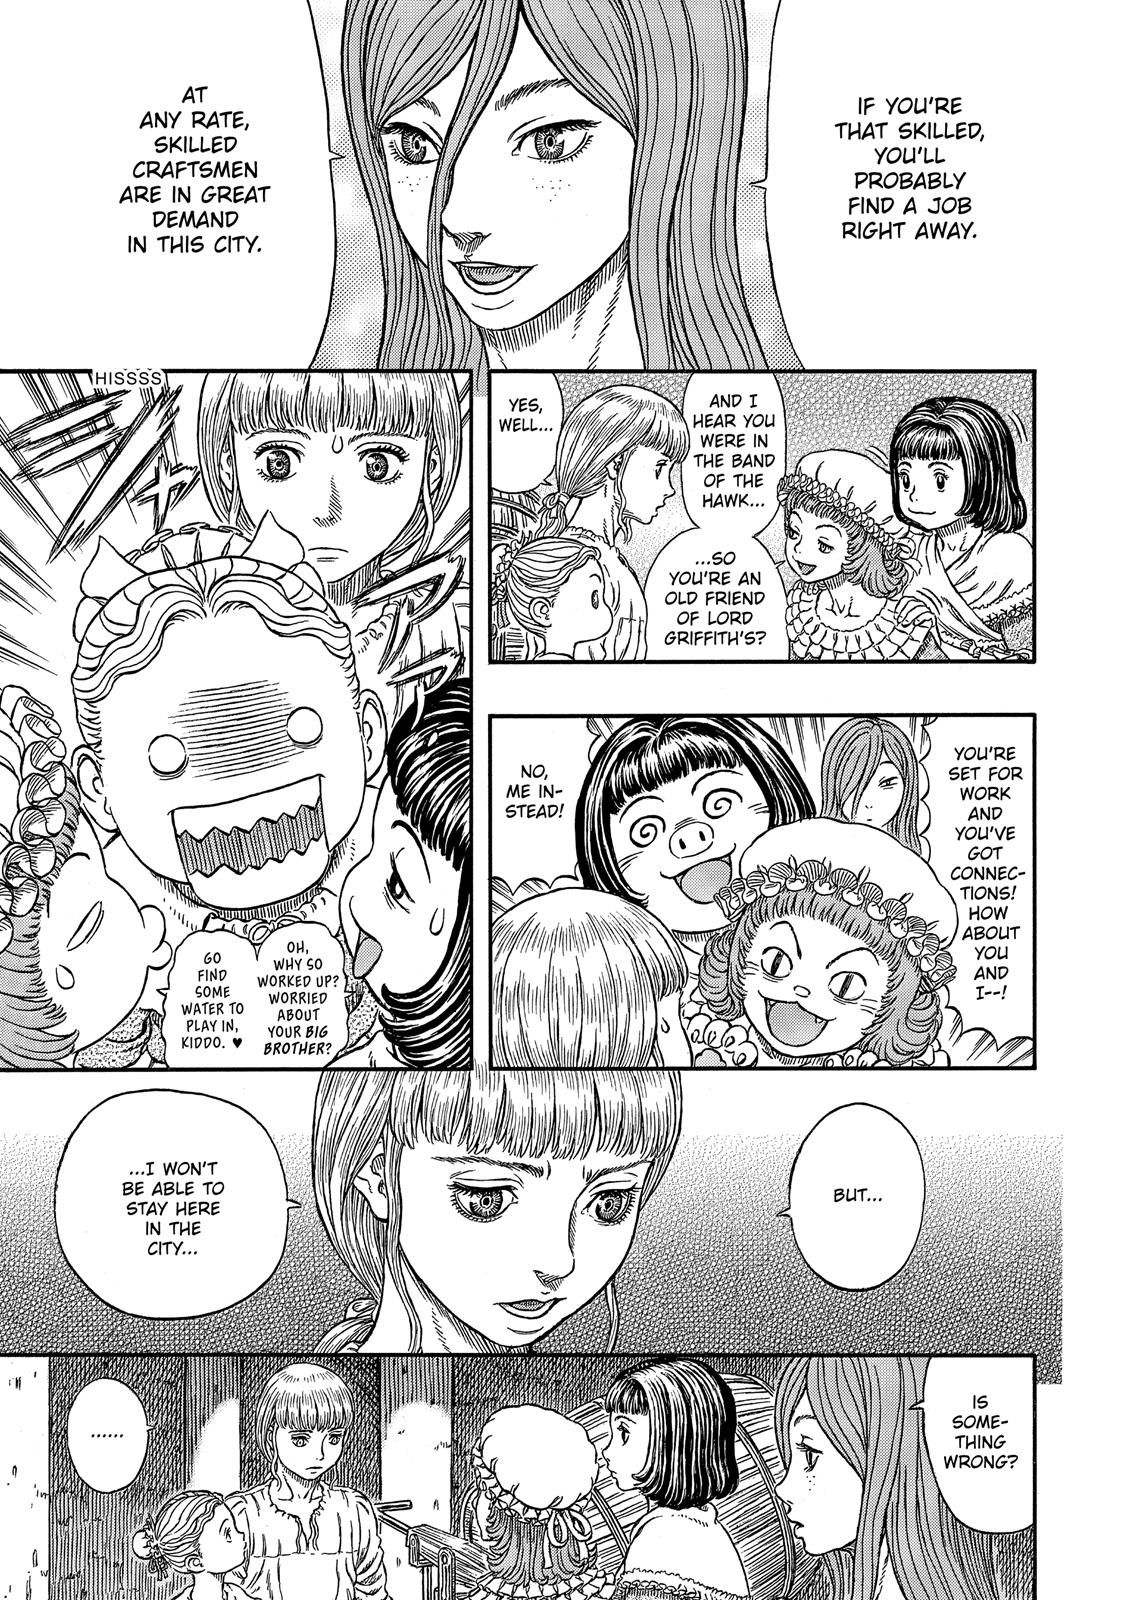 Berserk Manga Chapter 338 image 08